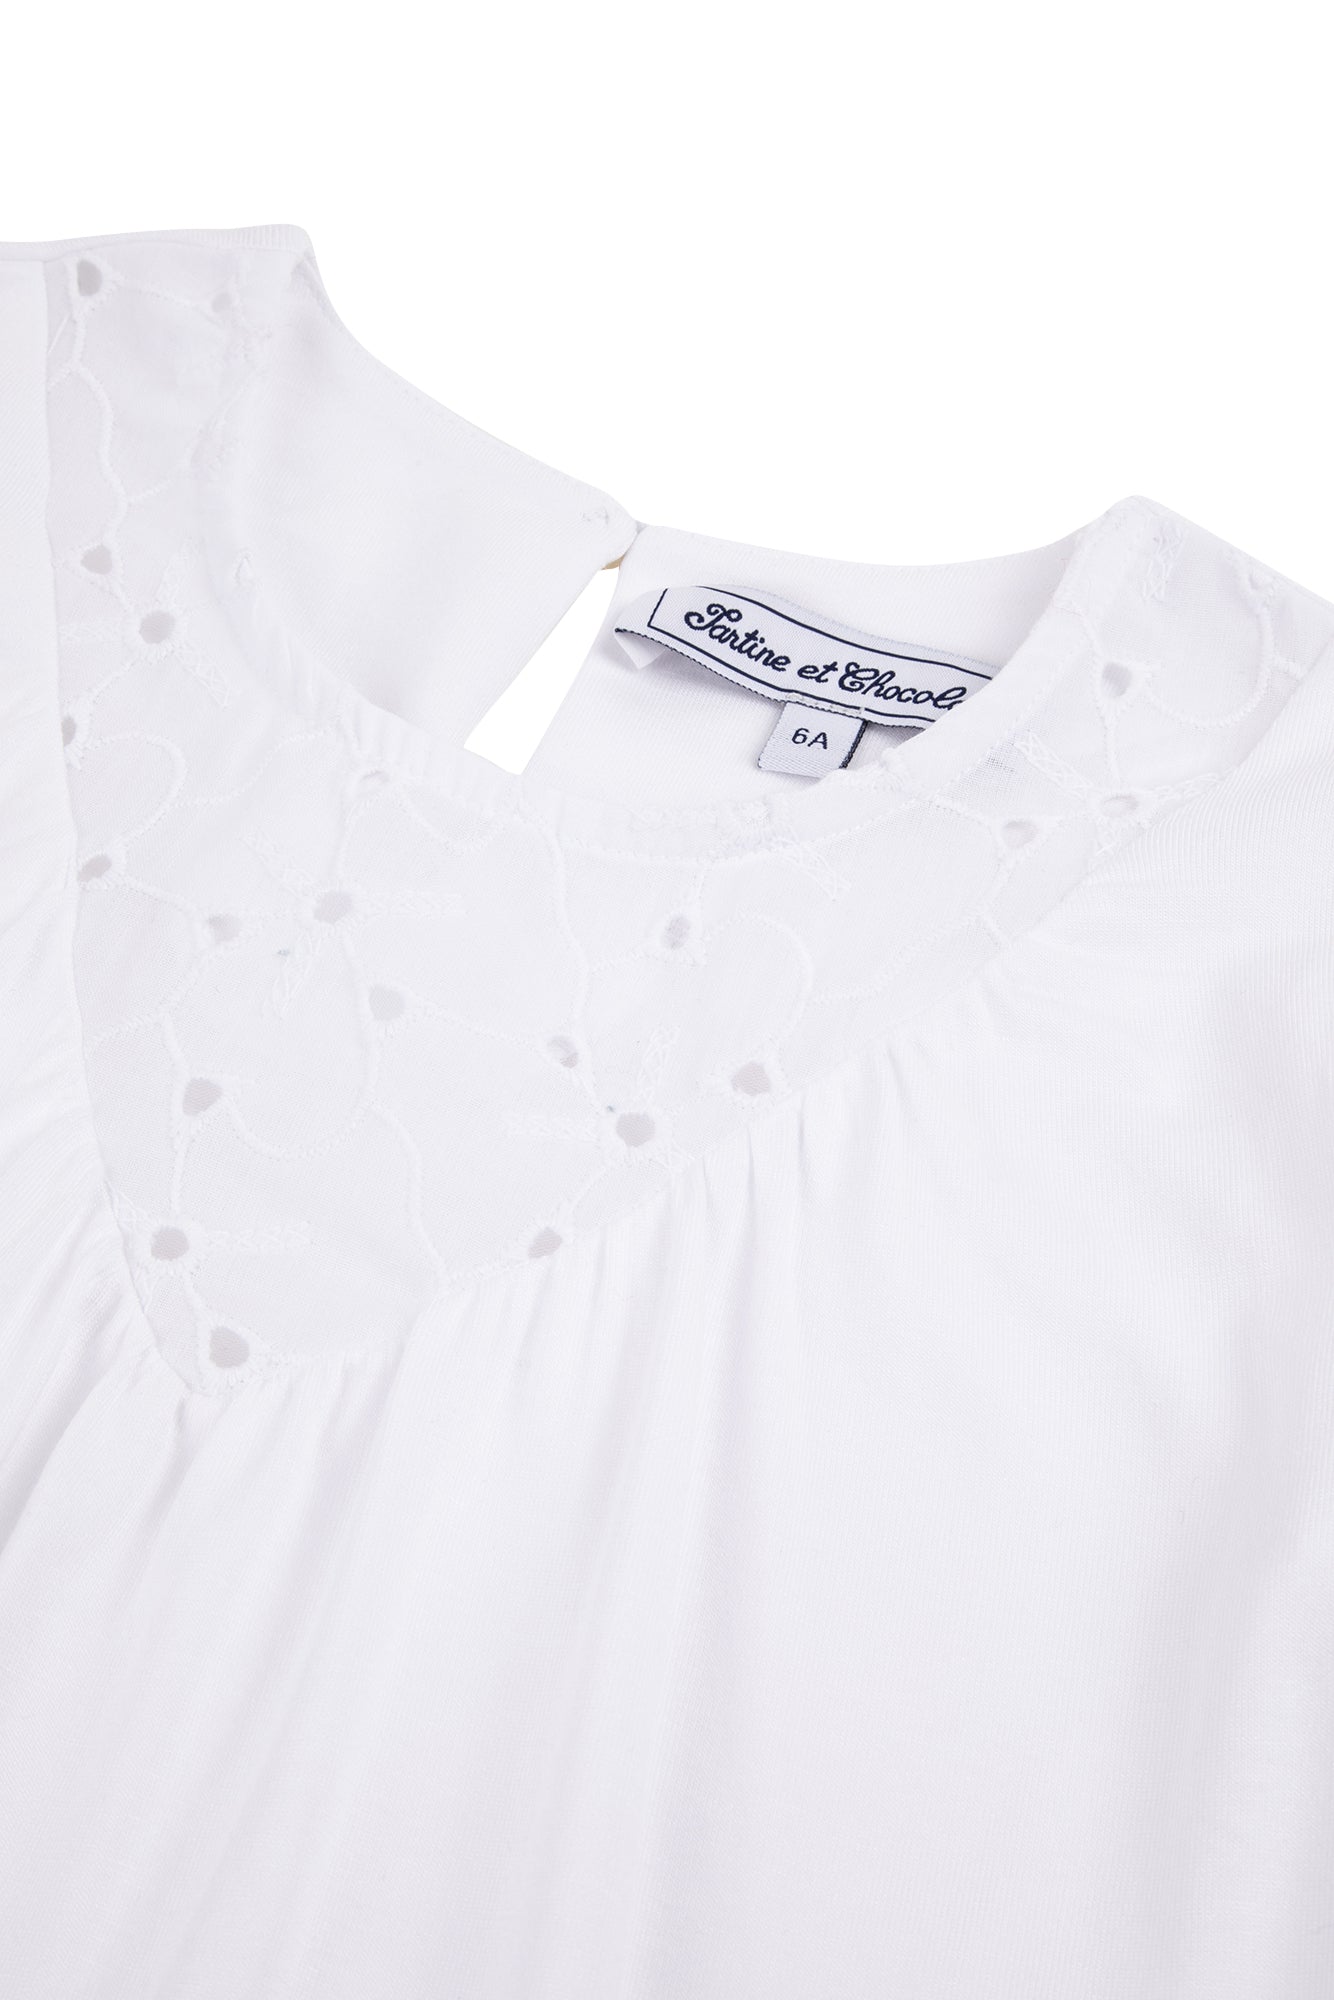 T-shirt Un Air de Campagne à manches ballon - Blanc